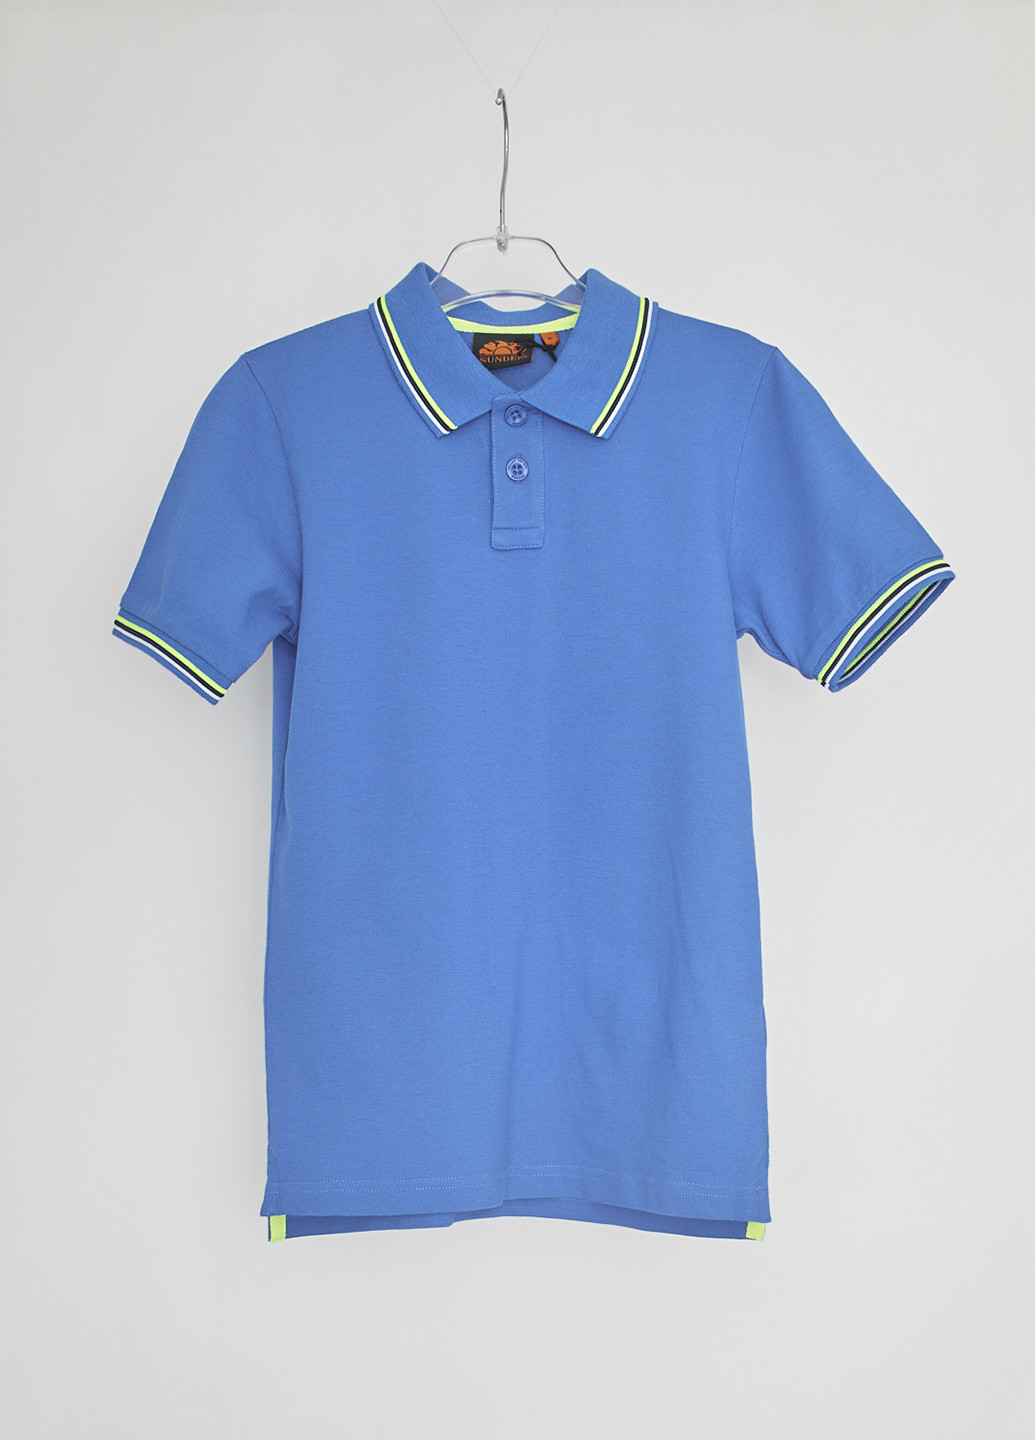 Голубой детская футболка-поло для мальчика Sundek с логотипом